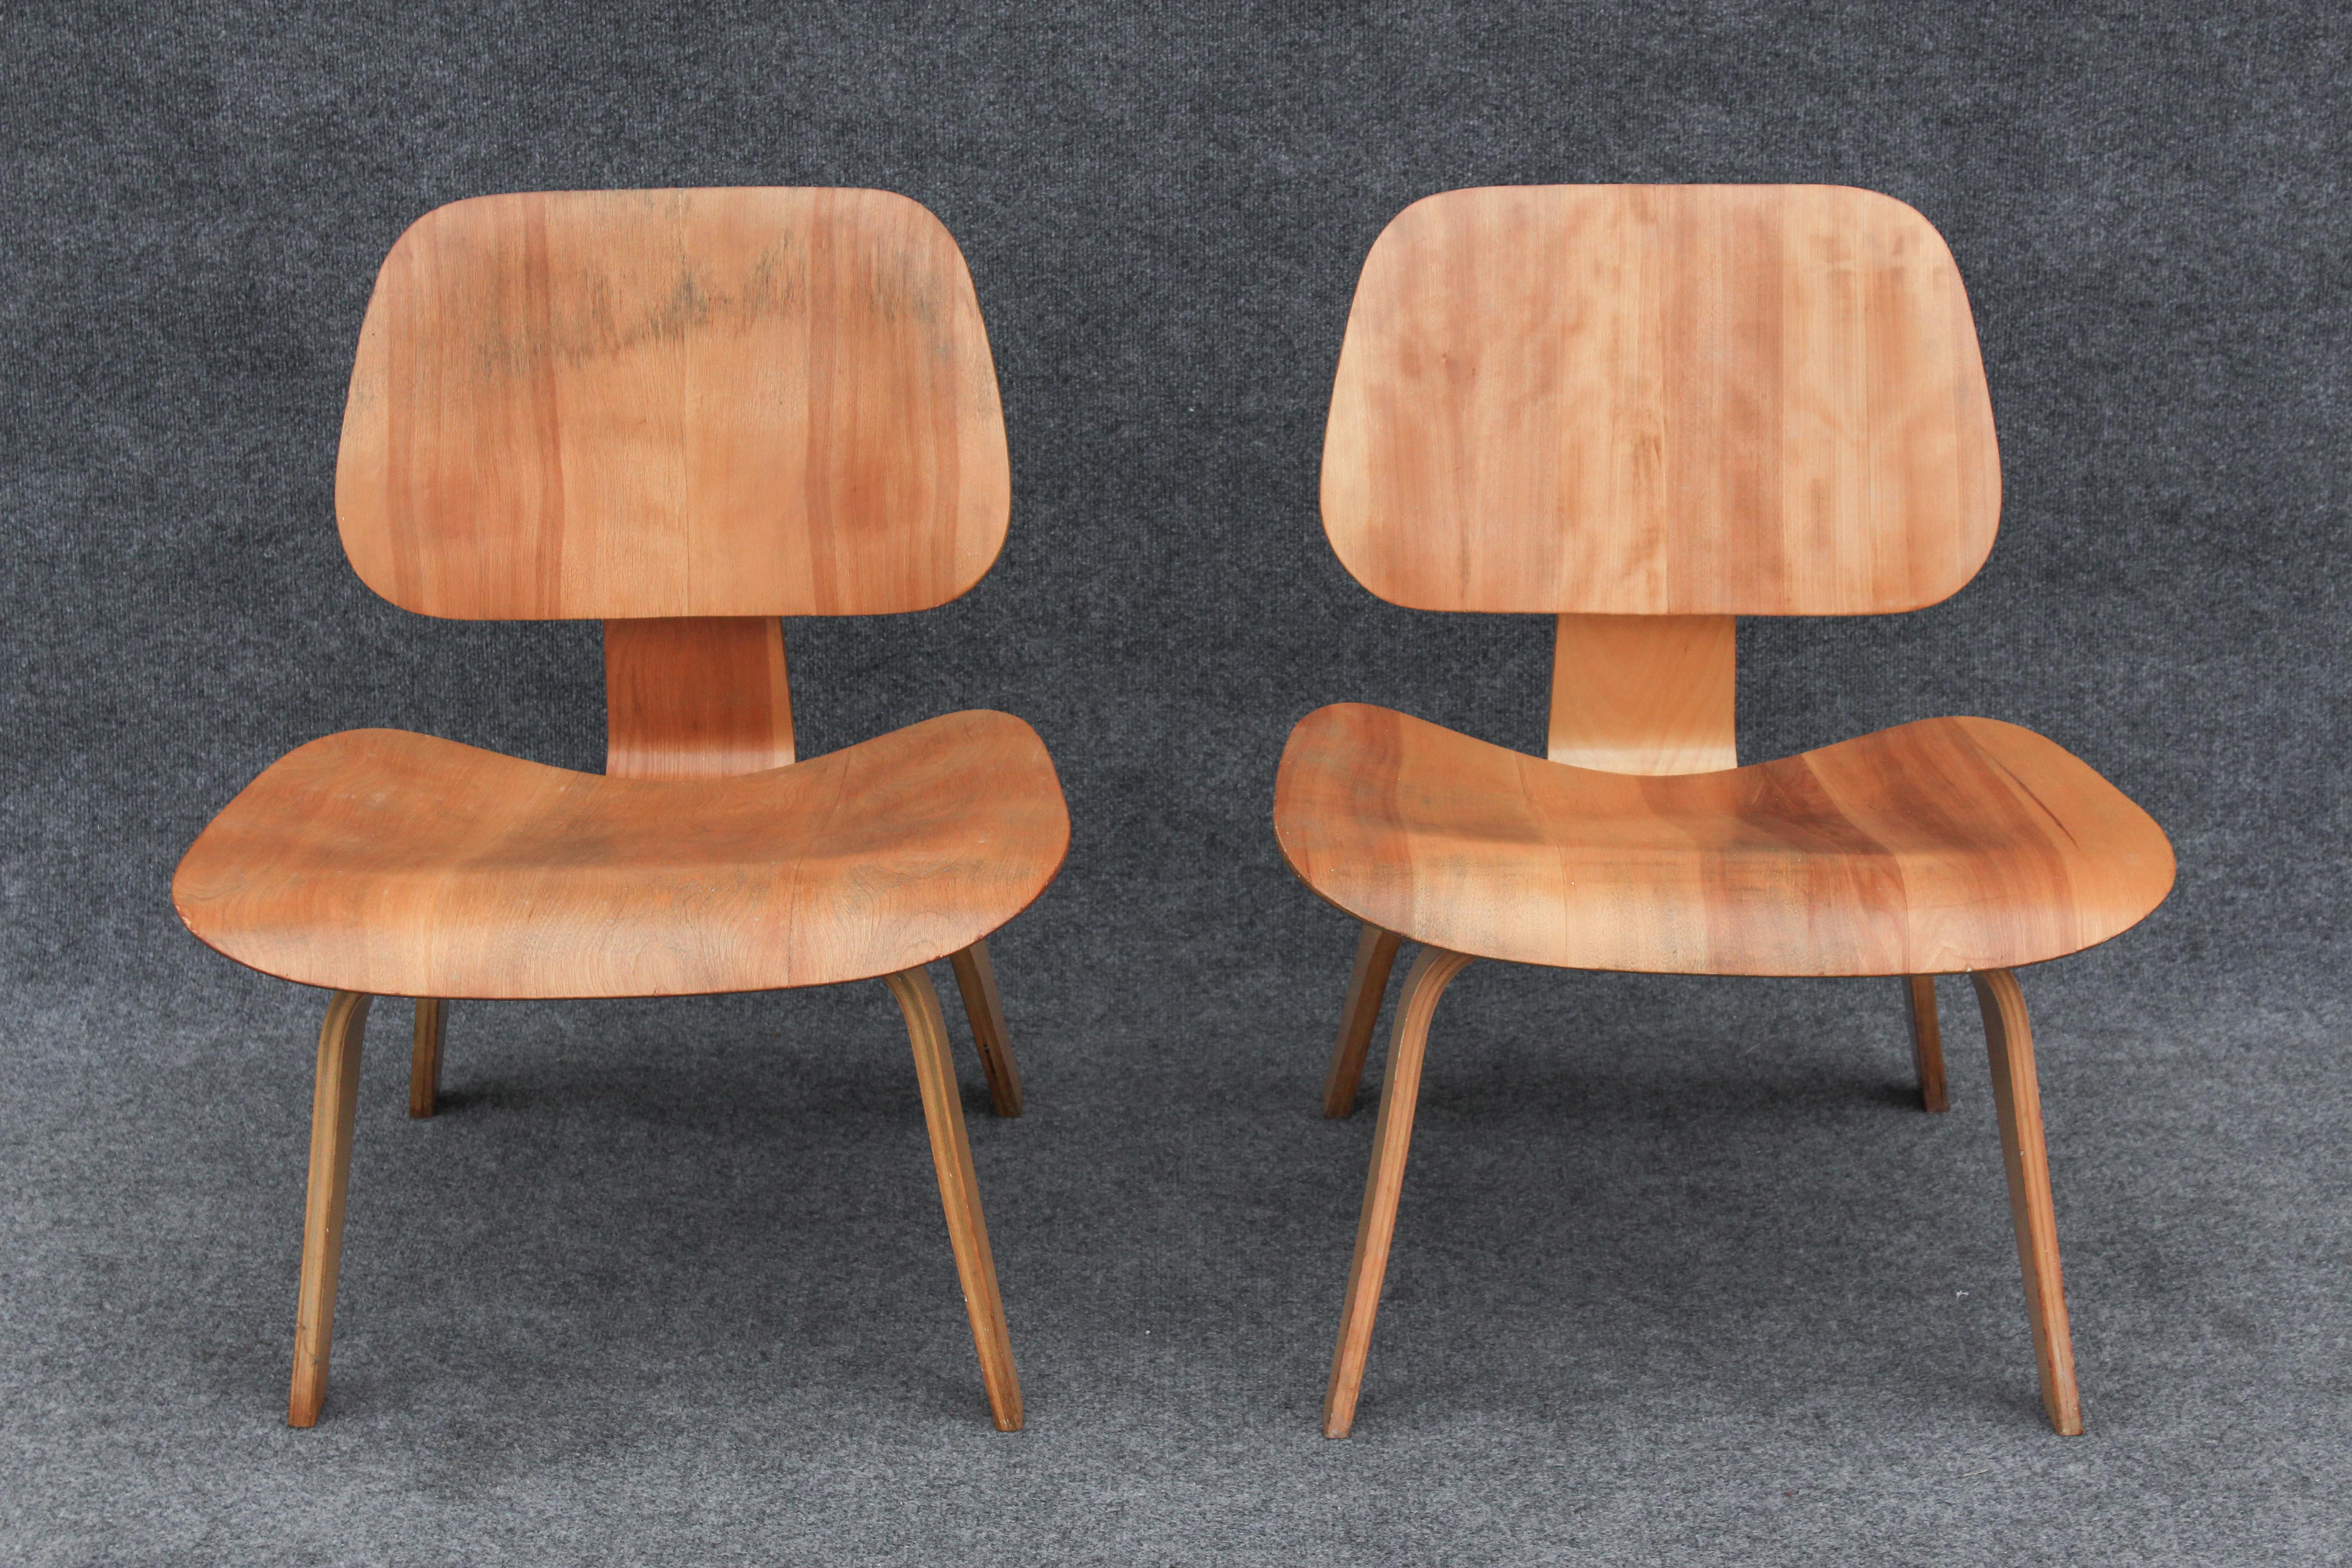 Conçue à la fin des années 1940 par Charles Eames, cette chaise s'est imposée dans le design du milieu du siècle comme très peu d'autres pièces. Les premiers modèles de ce type sont difficiles à trouver et sont très rarement en aussi bon état, car